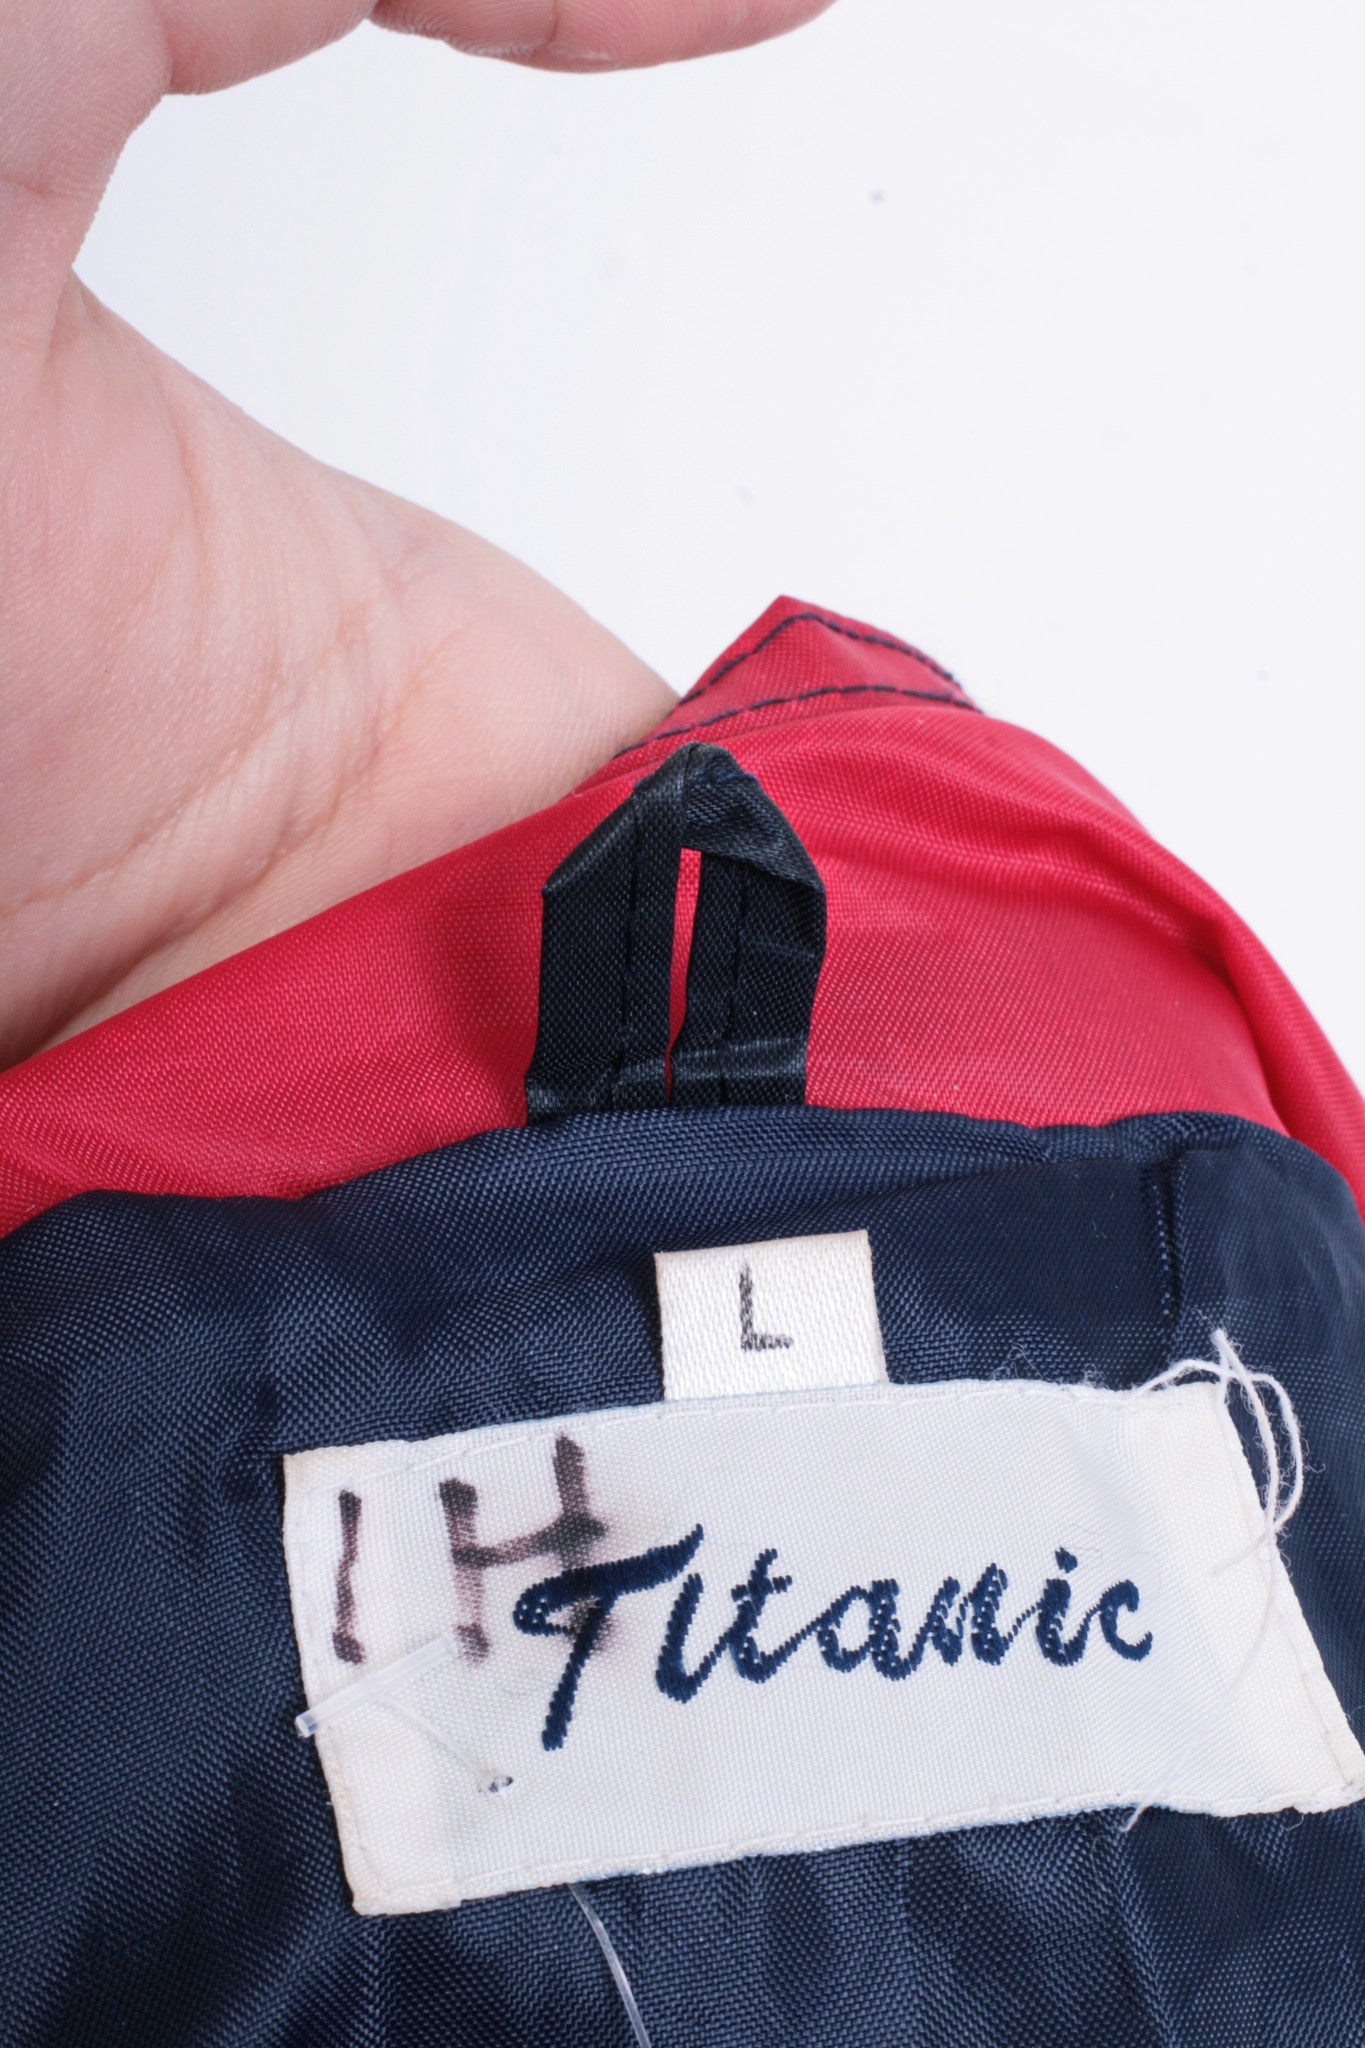 Titanic Mens L XL Vintage Jacket Parka Hood Shiny Navy Blue Green Festival - RetrospectClothes